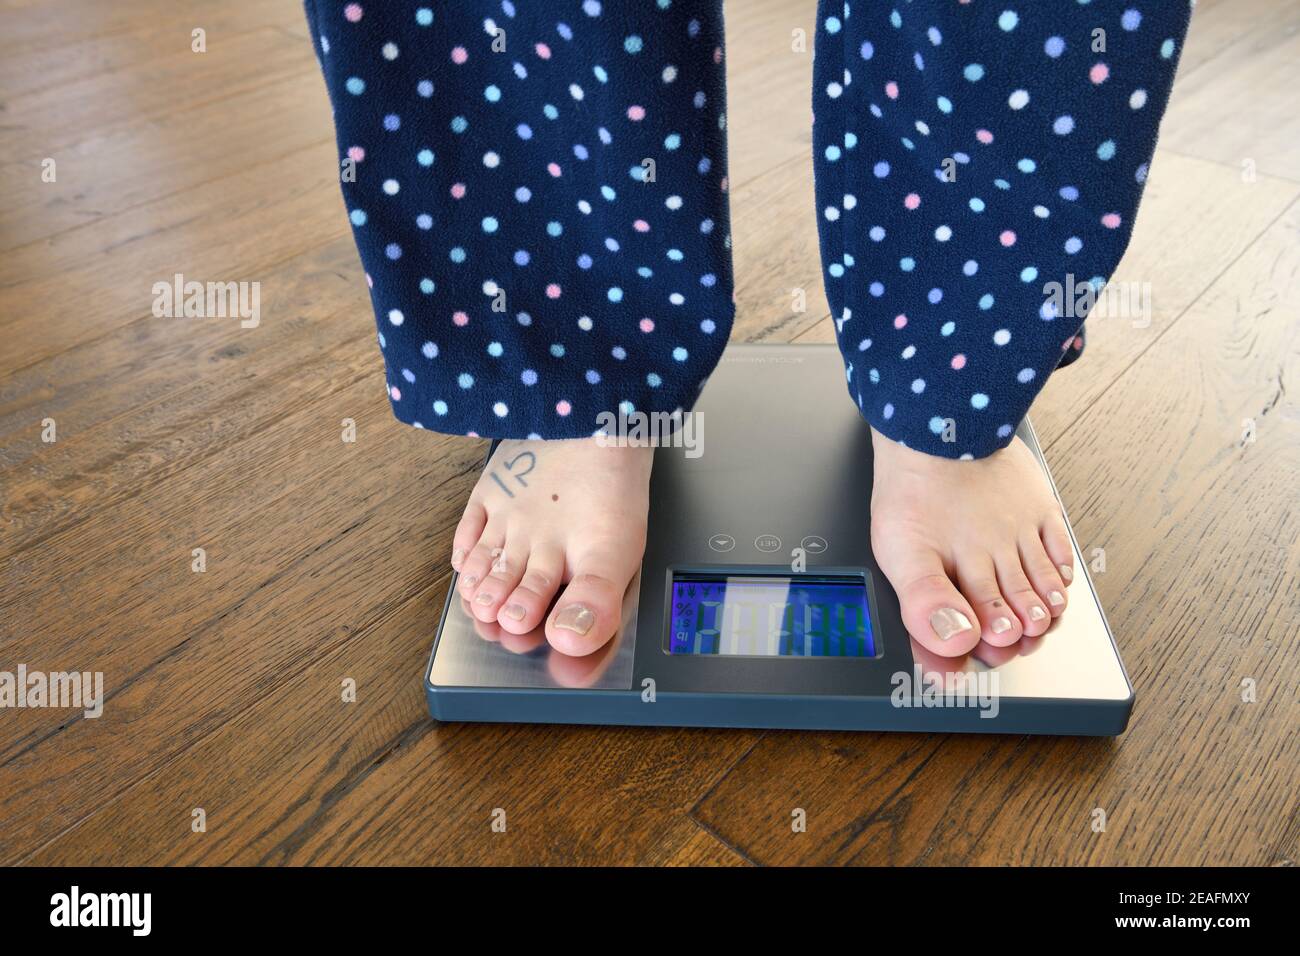 Frau im Schlafanzug und barfuß auf einer Badezimmerwaage Für Gewicht und Körperzusammensetzung auf dunklem Hartholzboden Stockfoto